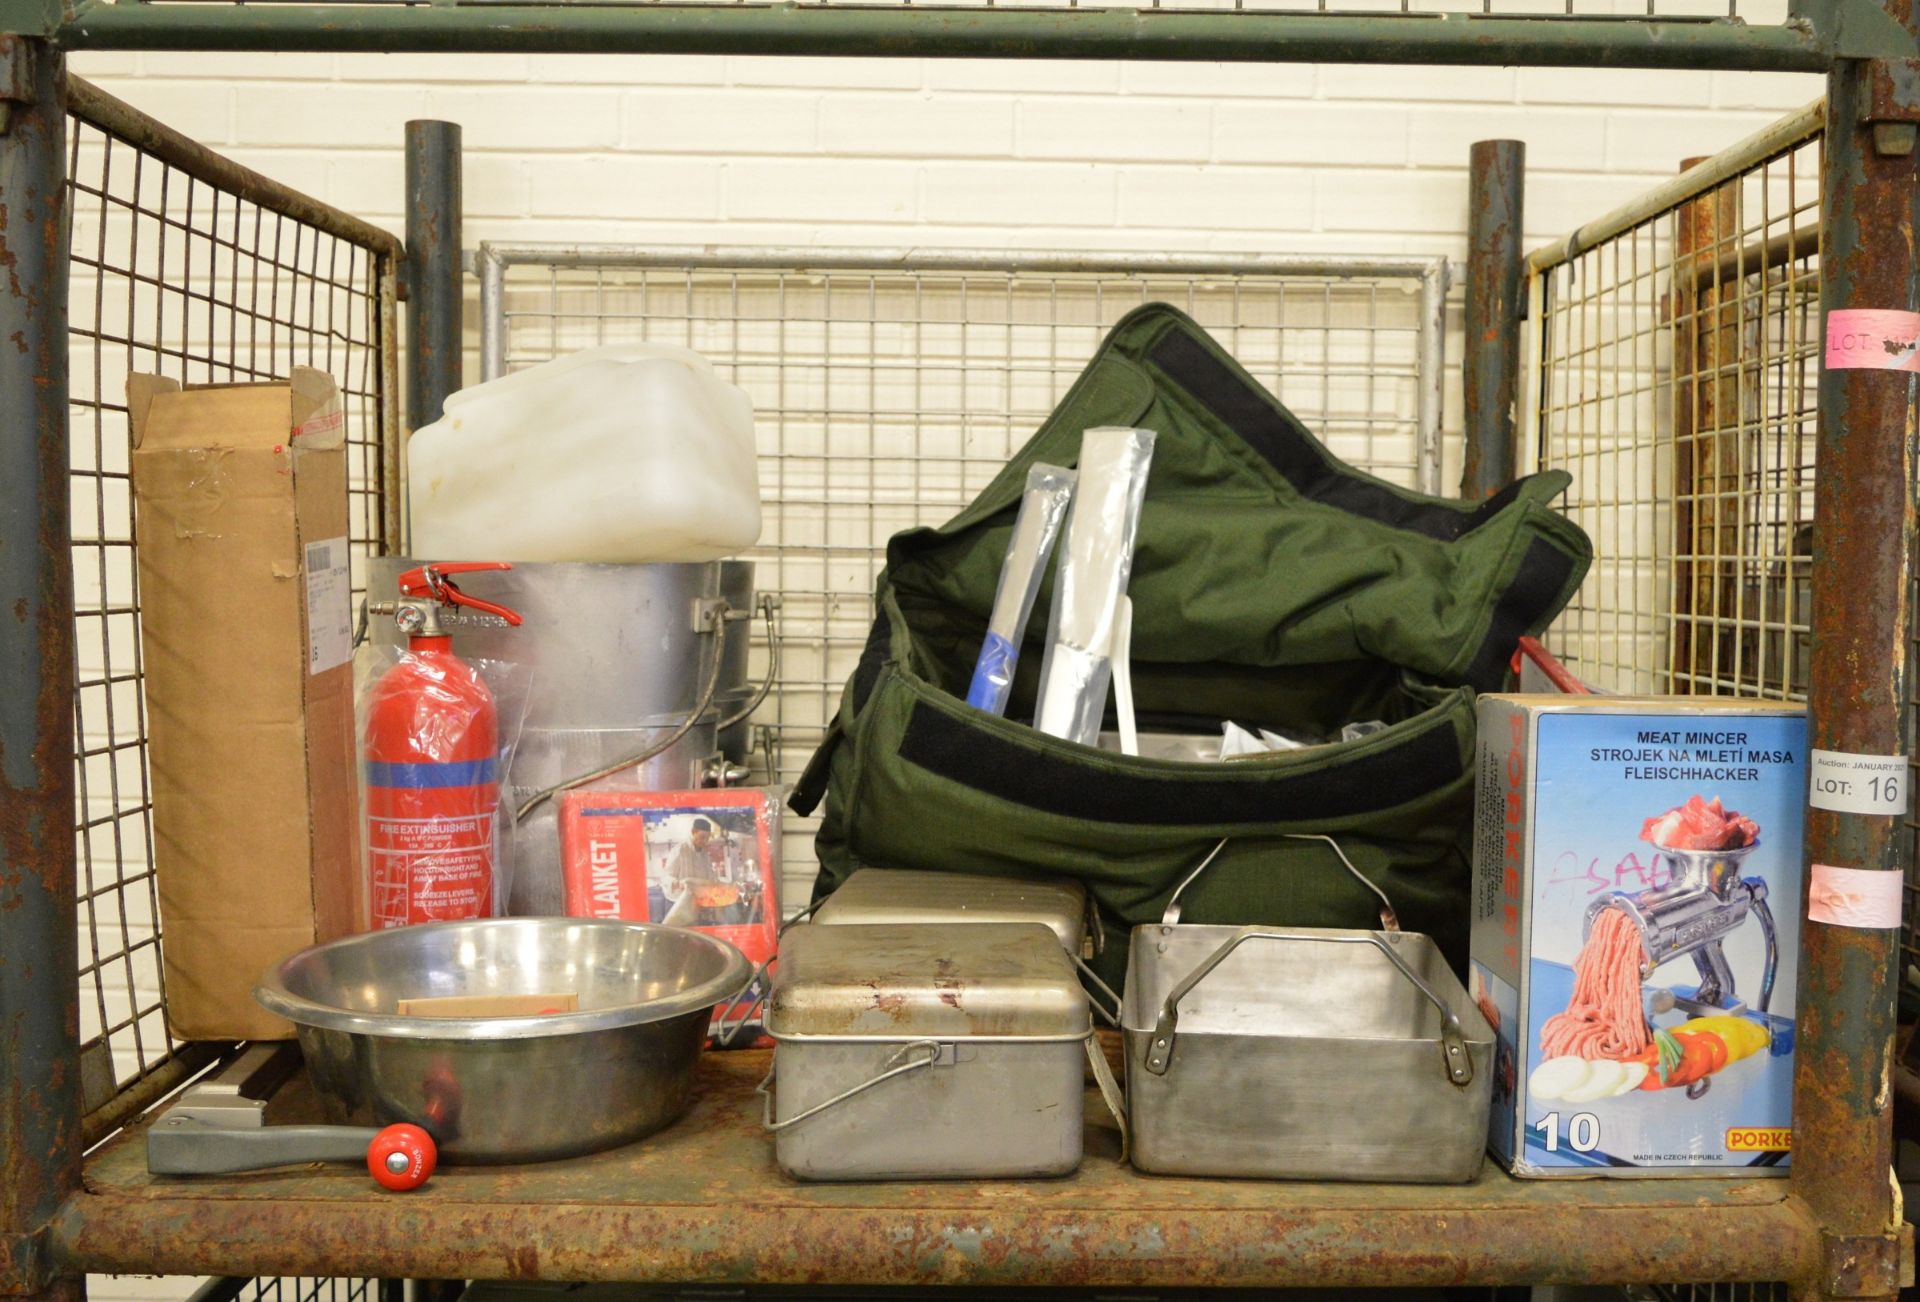 Field catering kit - Cooker, Oven, Utensil kit, pots, pans - Image 2 of 5